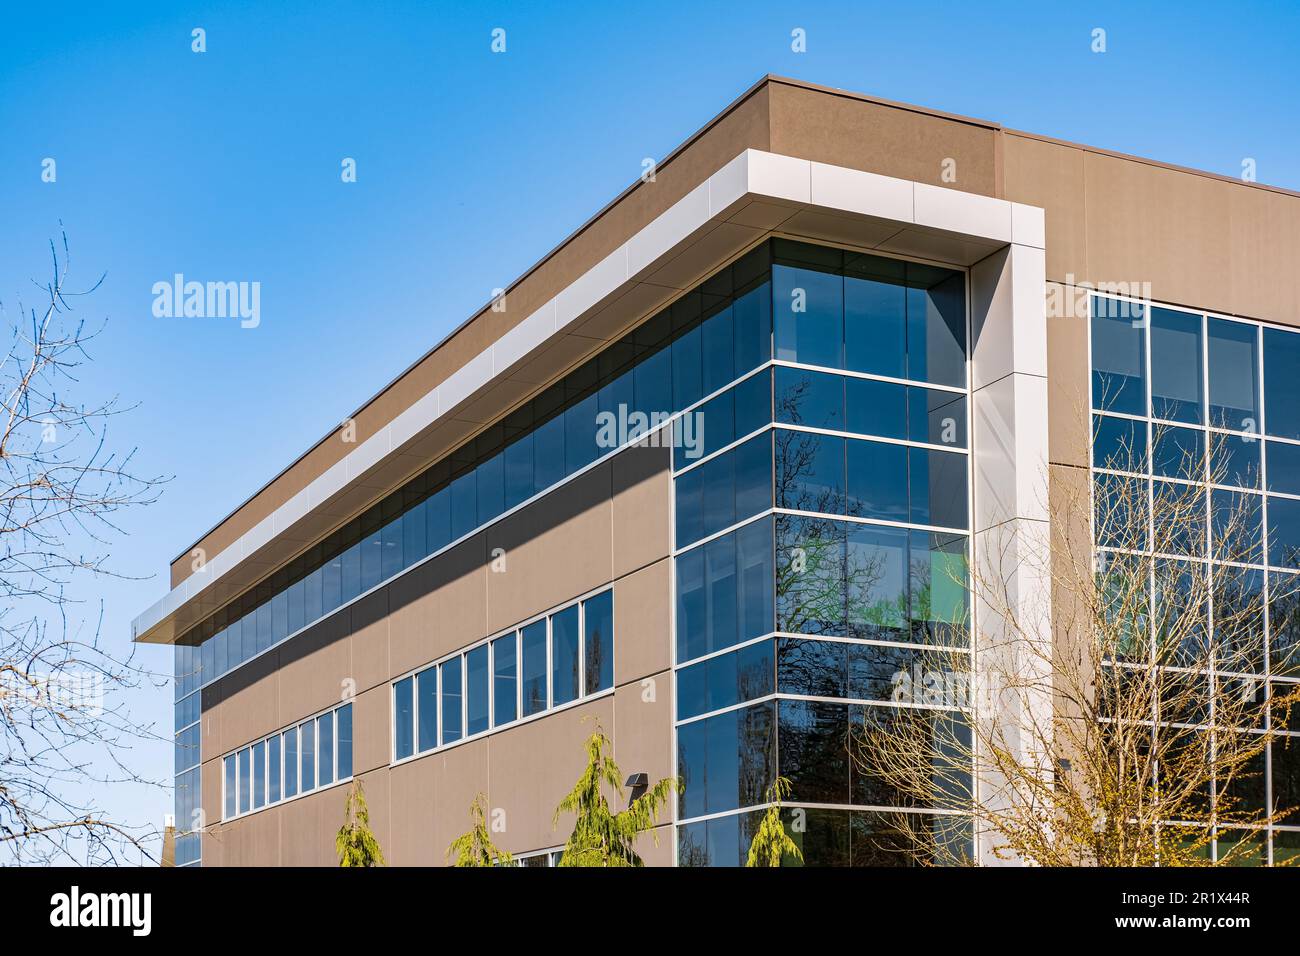 Neues modernes Gebäude für Handel und Industrie. Industriestaat. Architektur modernes Bürogebäude mit Fenstern. Architekturdetails Fassadendesign modern Stockfoto